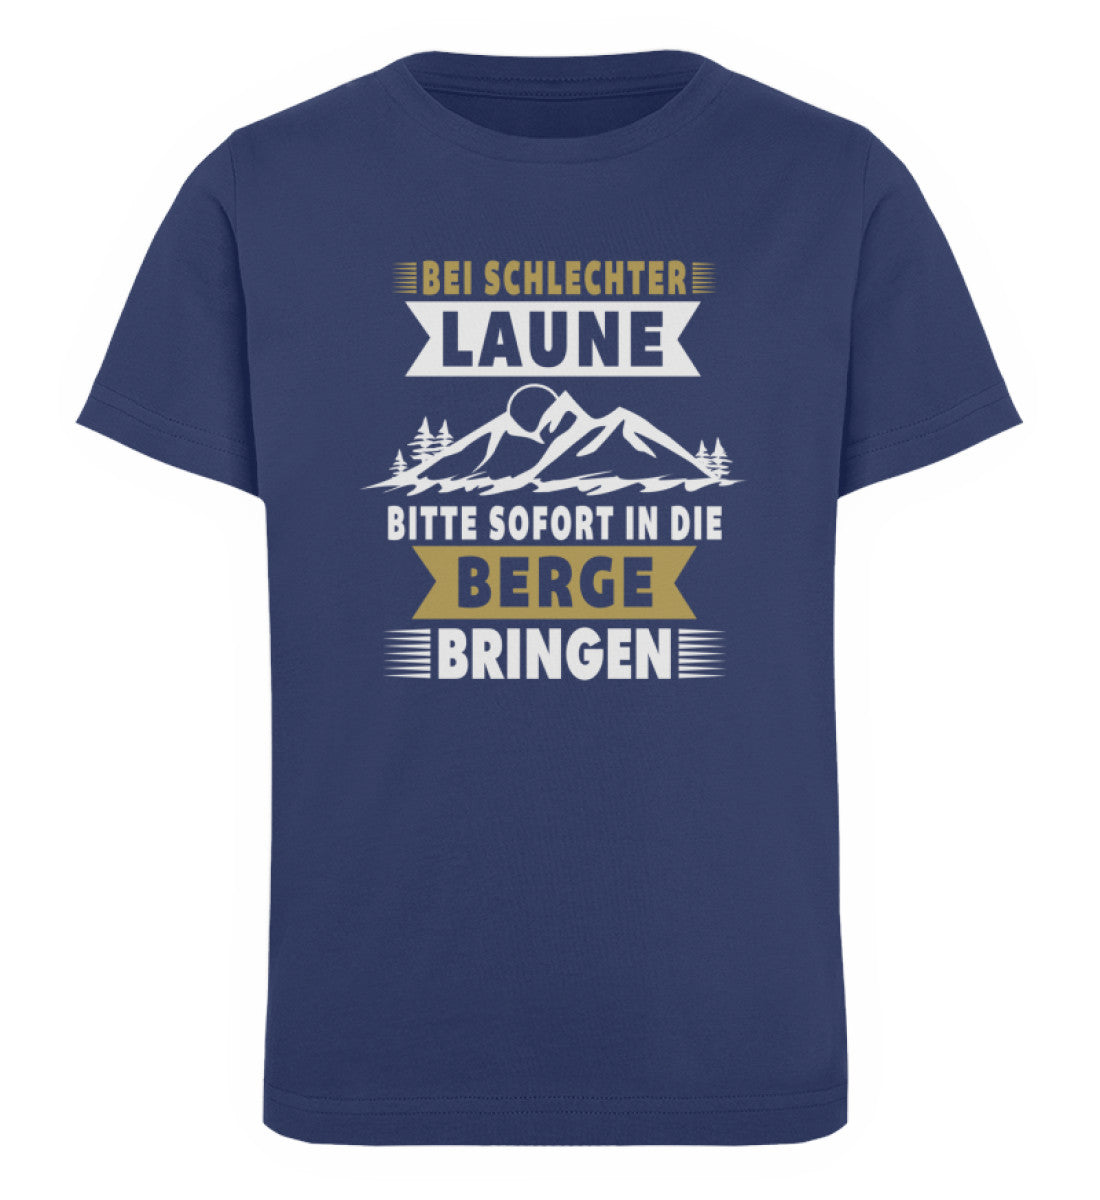 Bitte sofort in die Berg bringen - Kinder Premium Organic T-Shirt berge wandern Navyblau